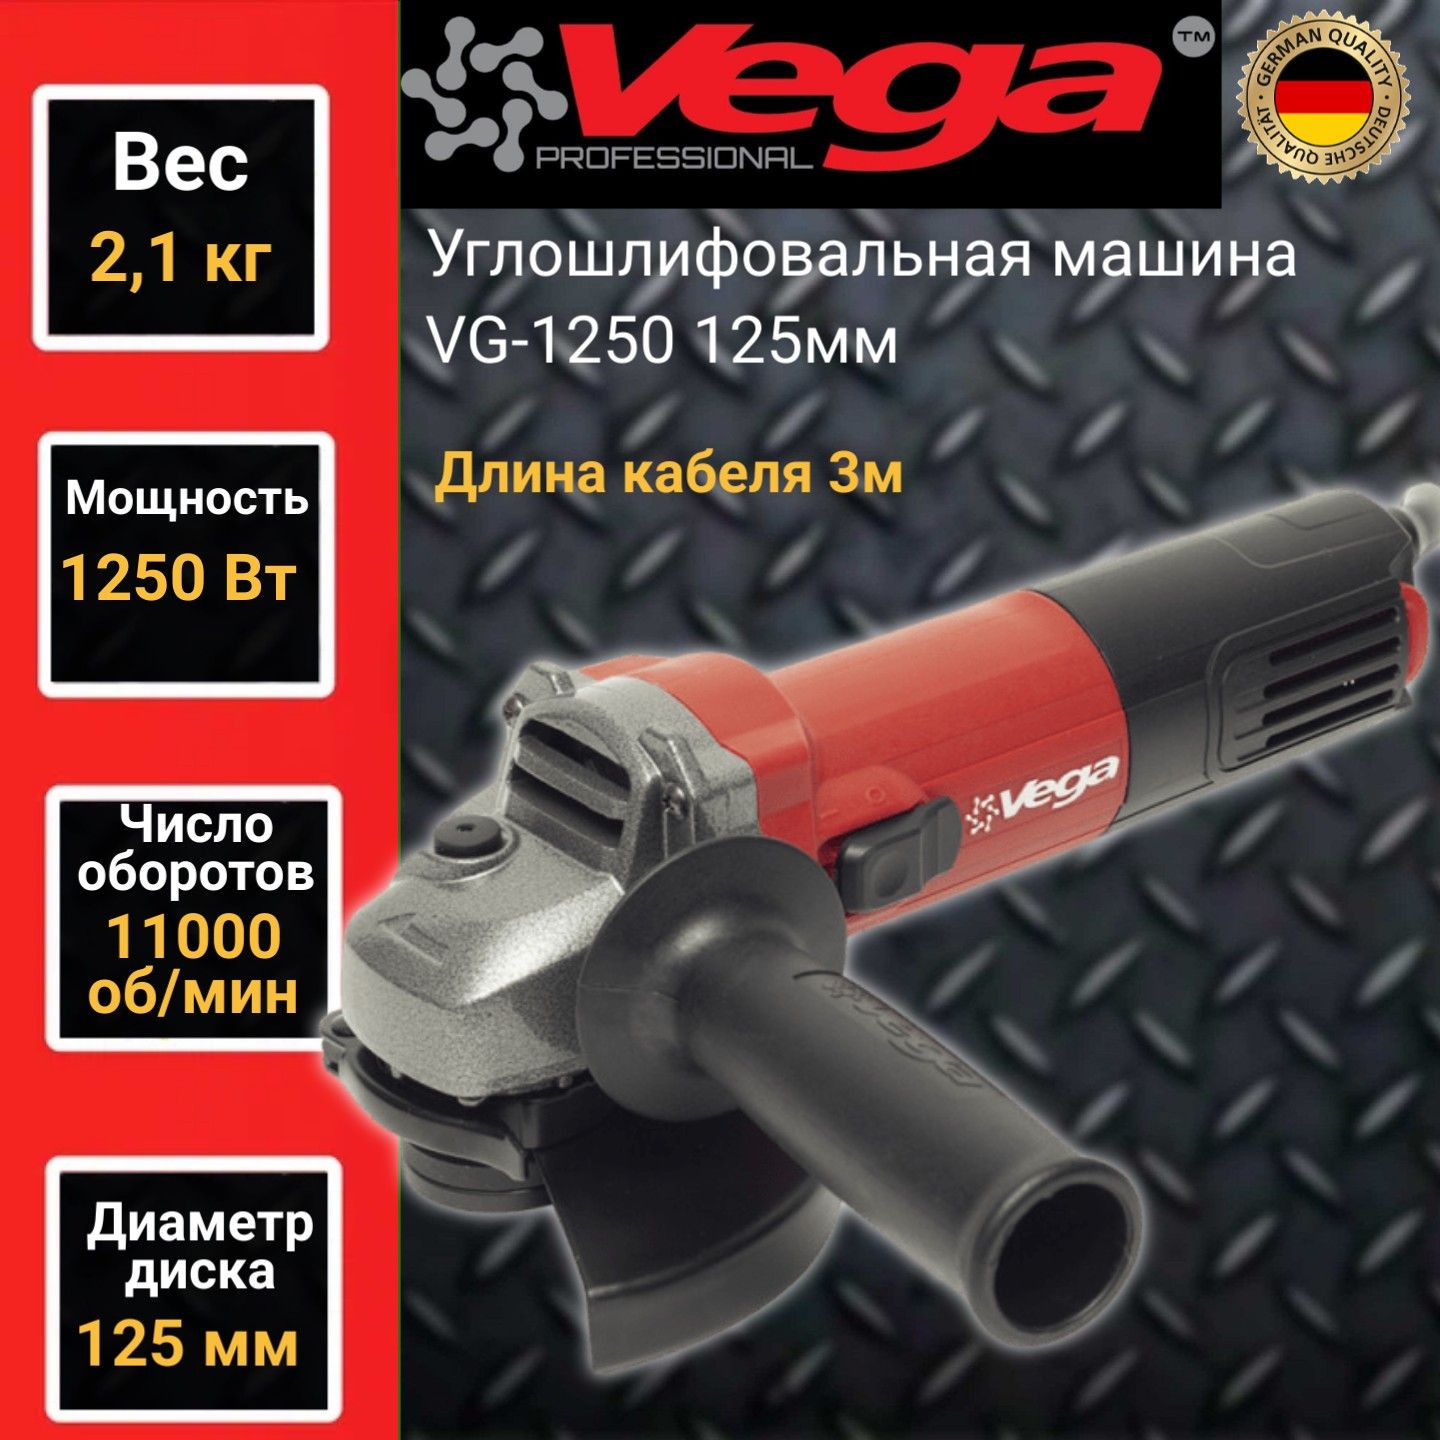 Углошлифовальная машина болгарка Vega Professional VG 1250, 125мм круг,1250Вт,11000об/мин сетевая угловая шлифовальная машина фиолент professional мшу3 11 150 в коробке